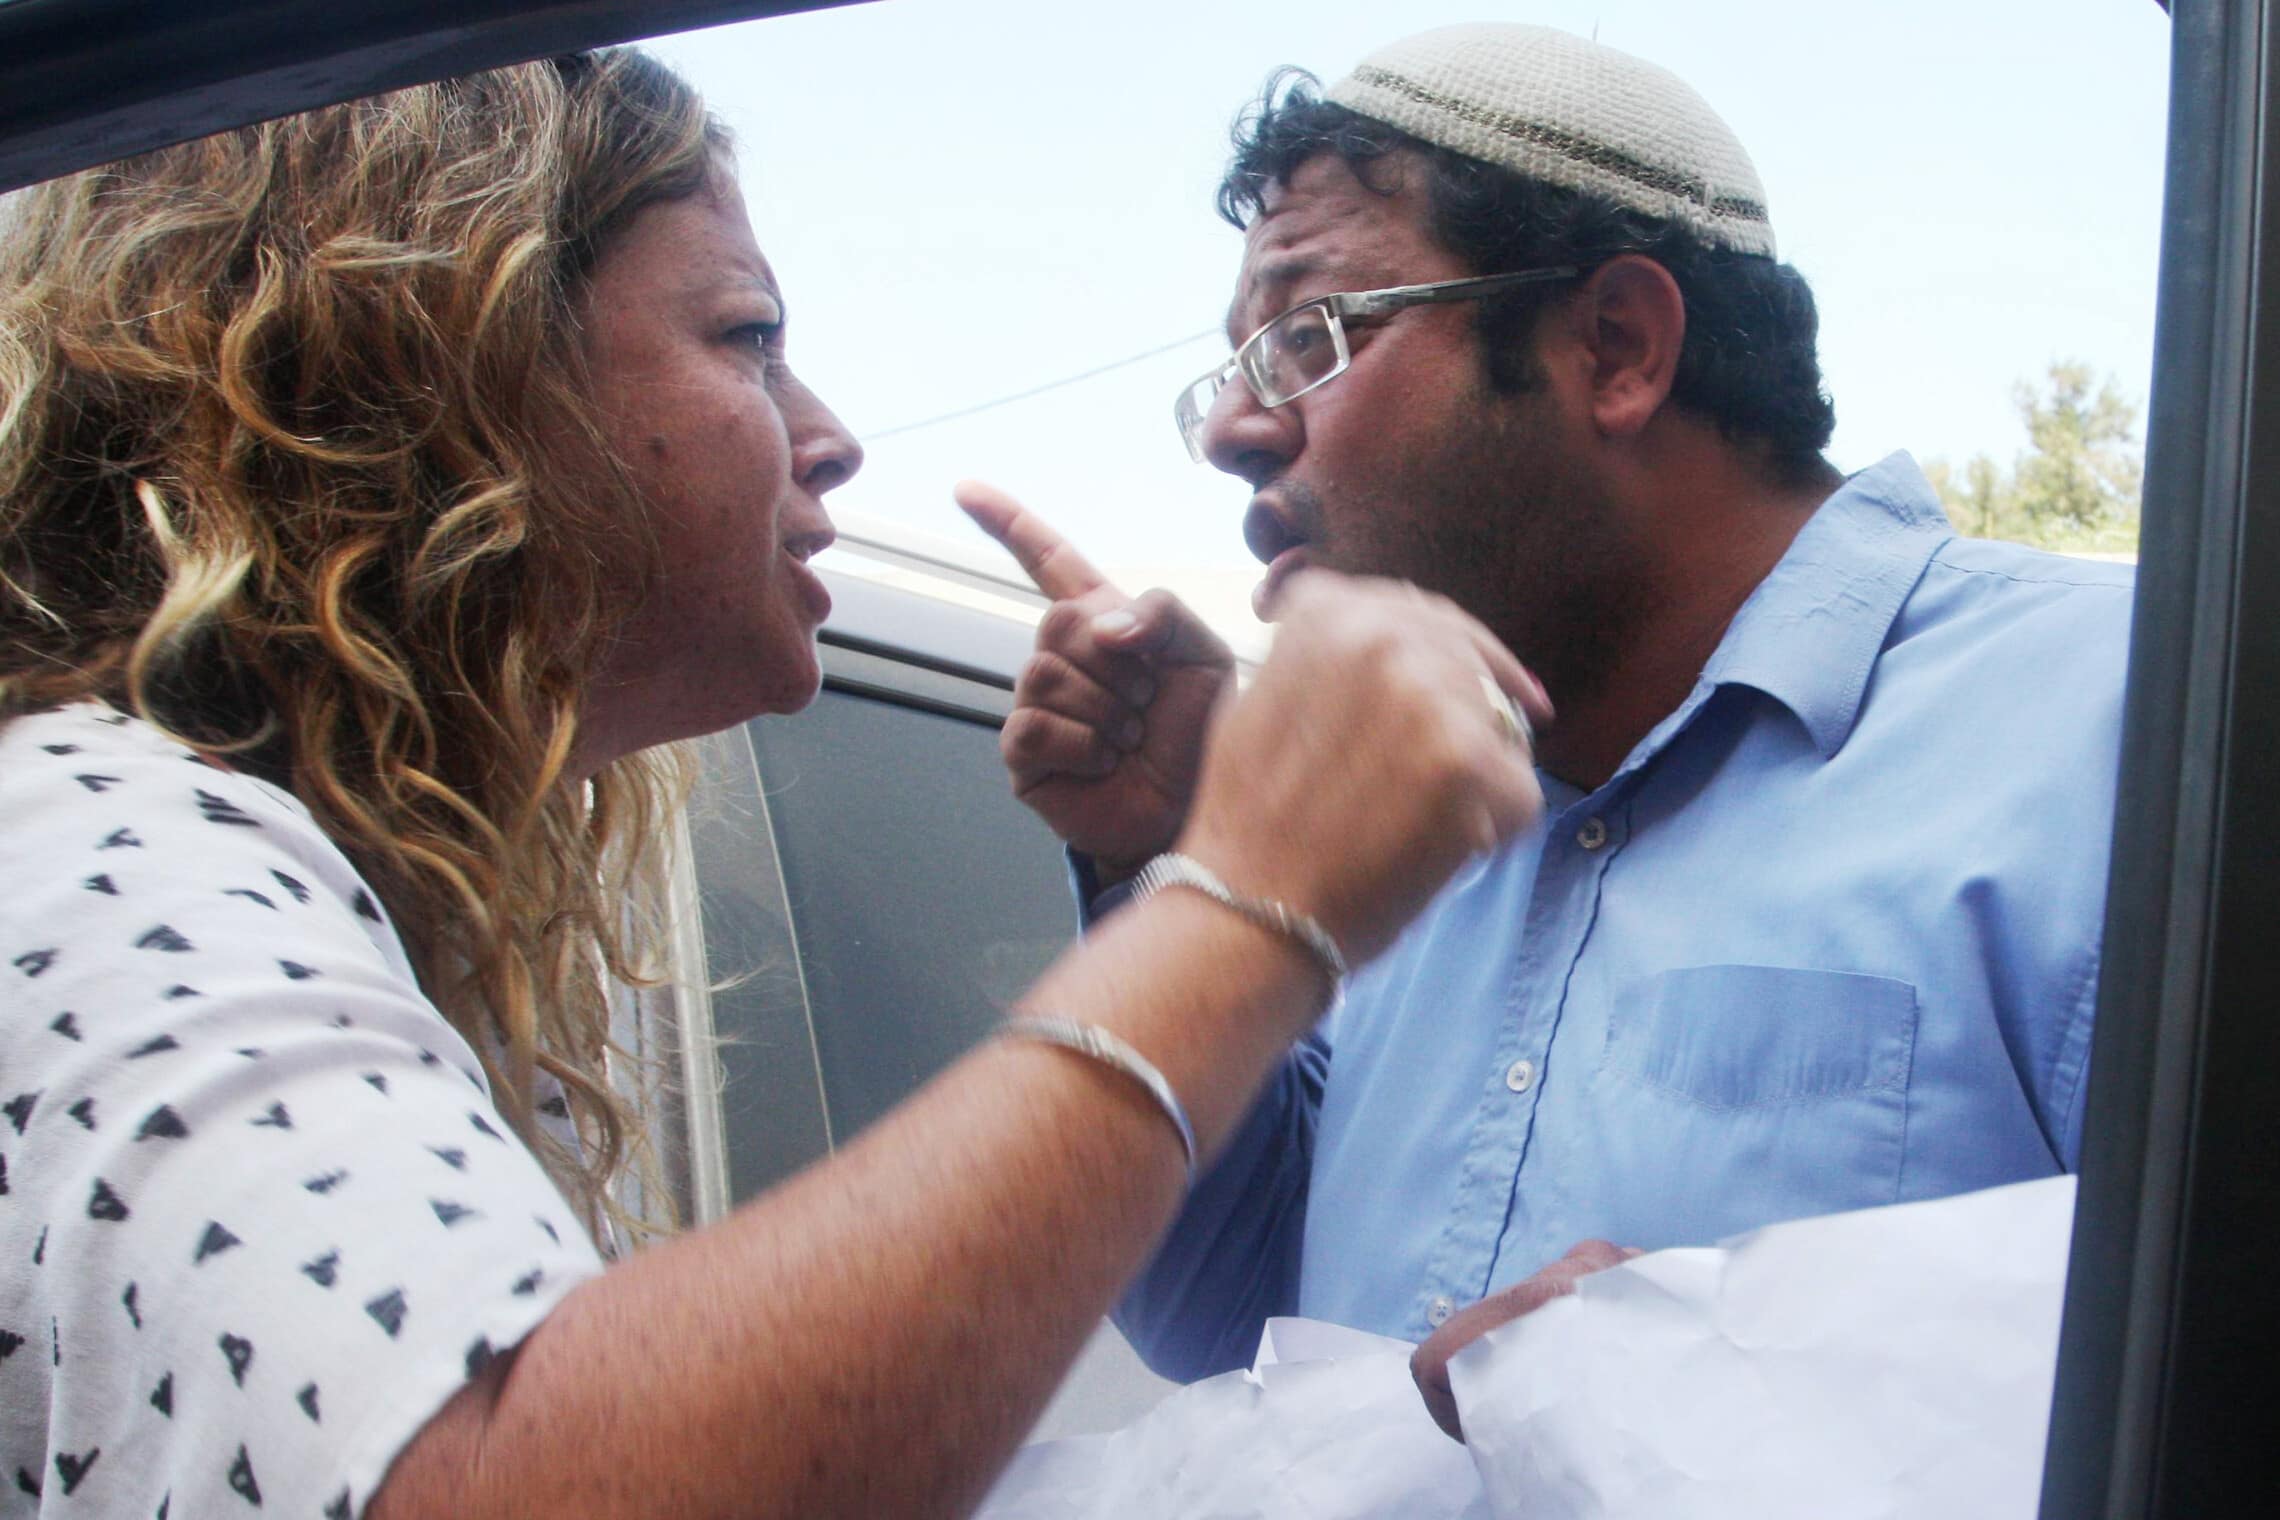 איתמר בן-גביר מתעמת עם נעה בן-ארצי, נכדתו של יצחק רבין, בטקס לציון 20 שנה מאז ממשלת רבין, 14 באוגוסט 2012 (צילום: רוני שוצר/פלאש90)